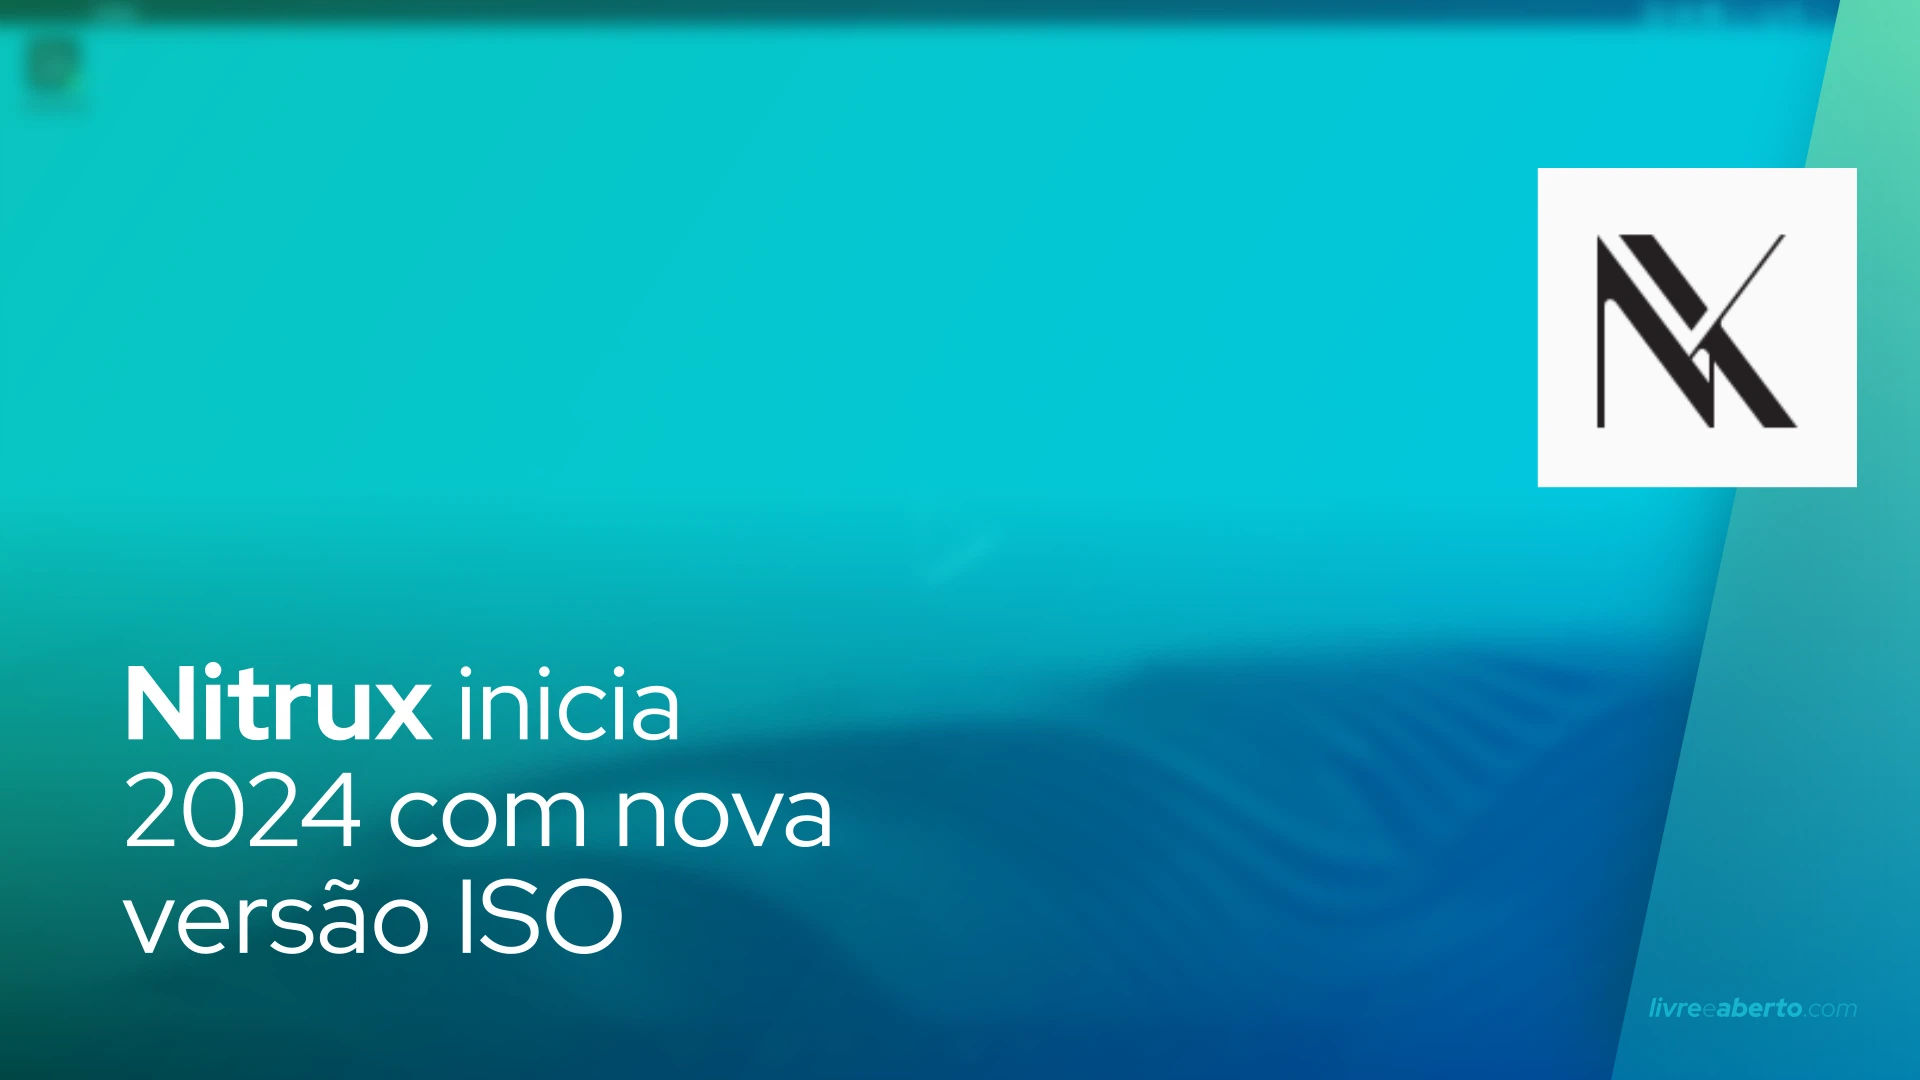 Nitrux inicia 2024 com nova versão ISO